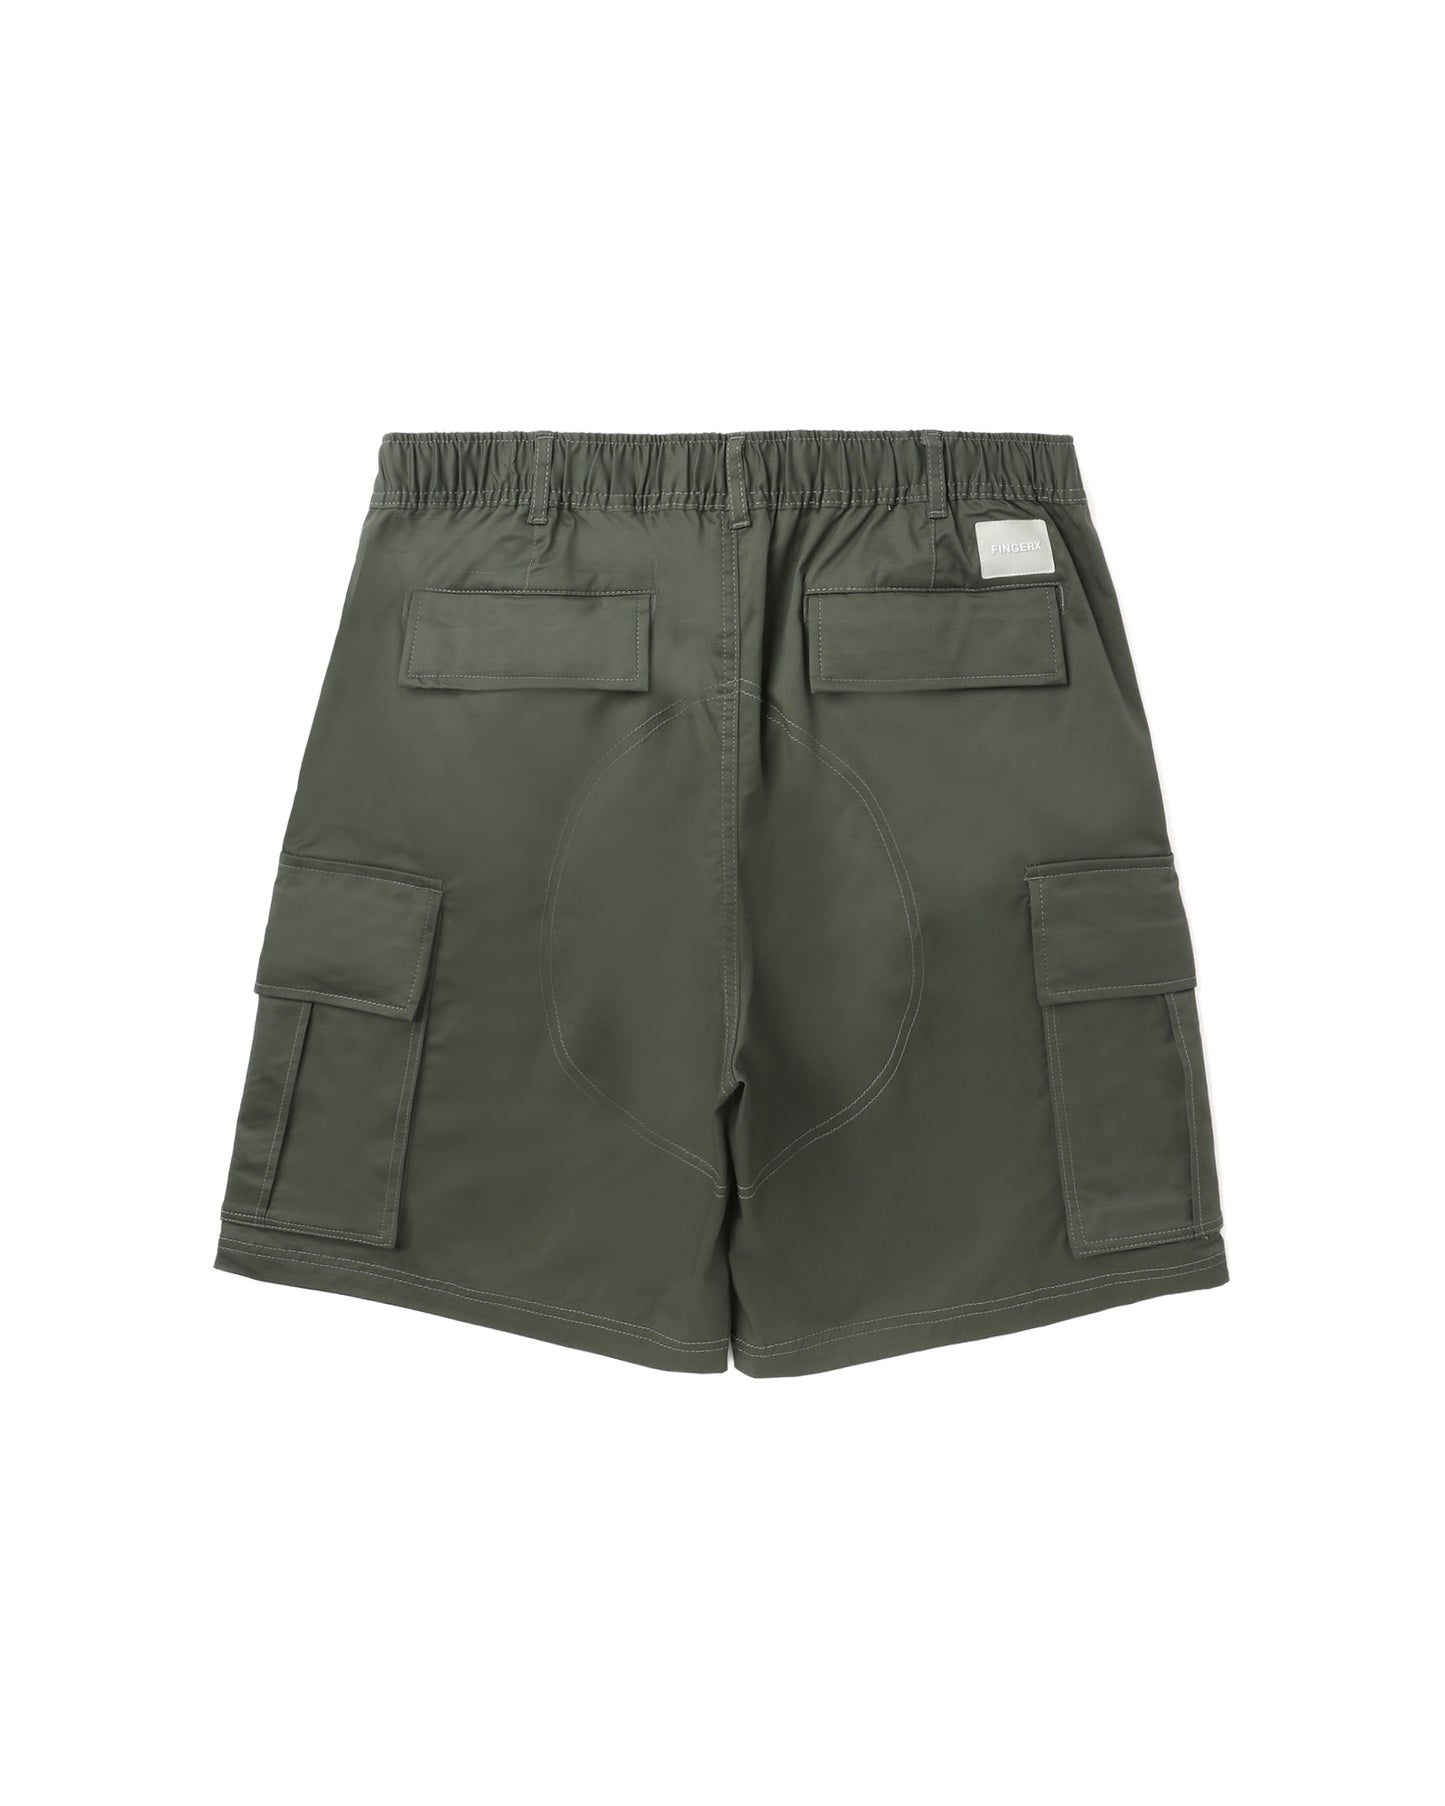 Men's - Khaki Cargo Shorts